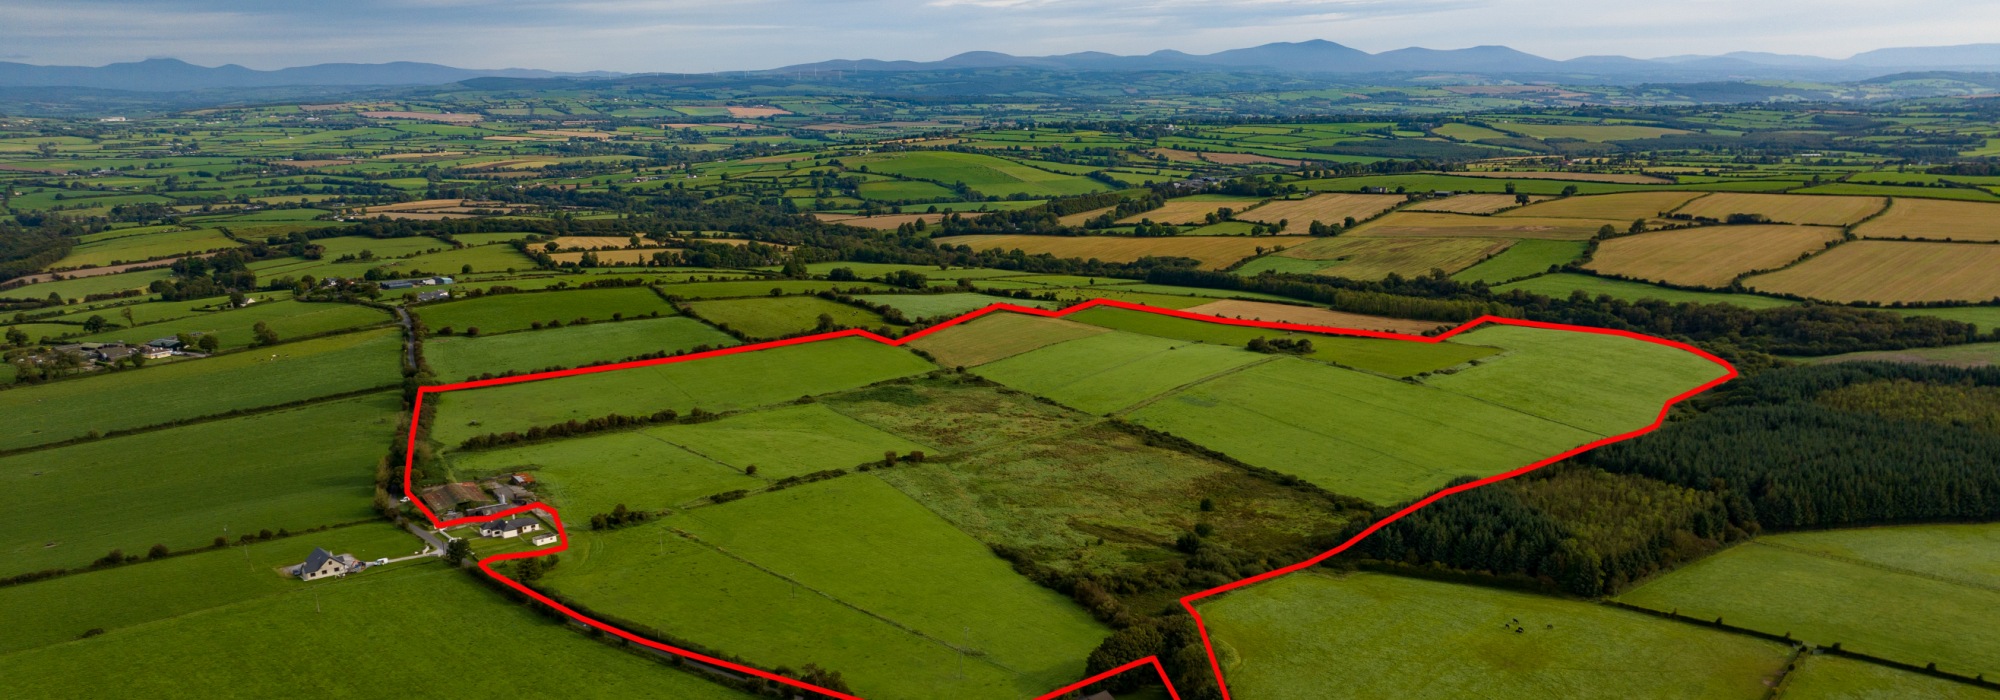 89 Acre Non-Residential Farm | Ardra, Castlelyons, Co Cork